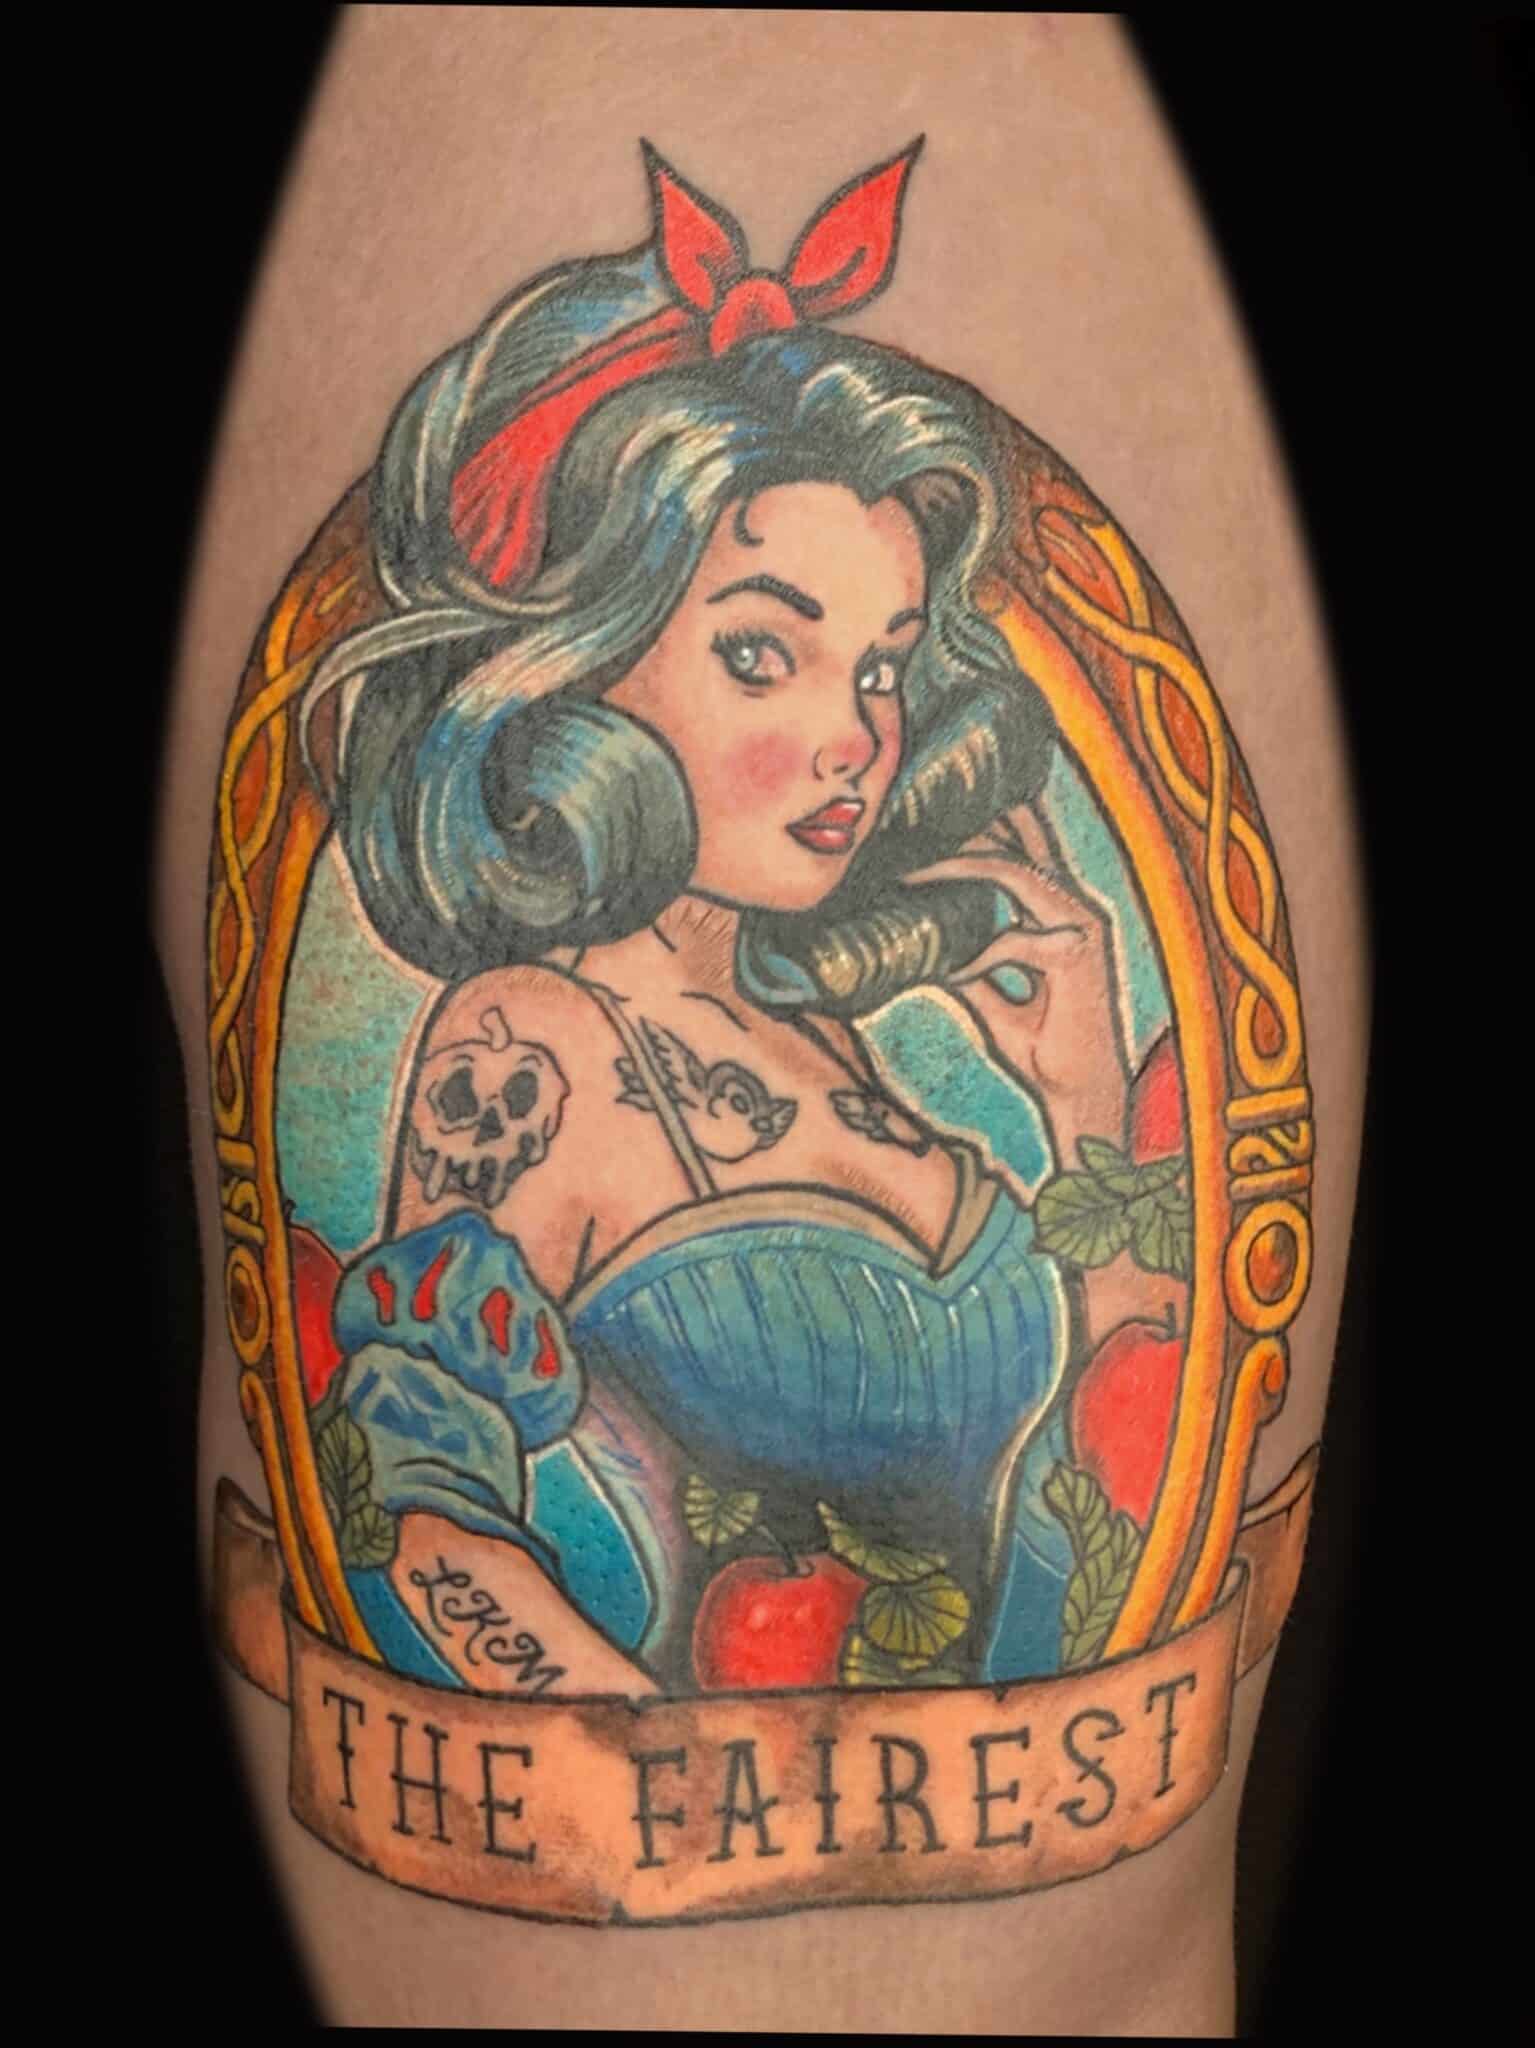 Snow White tattoo revolt tattoos, Russell Loo, Artist at Revolt Tattoos